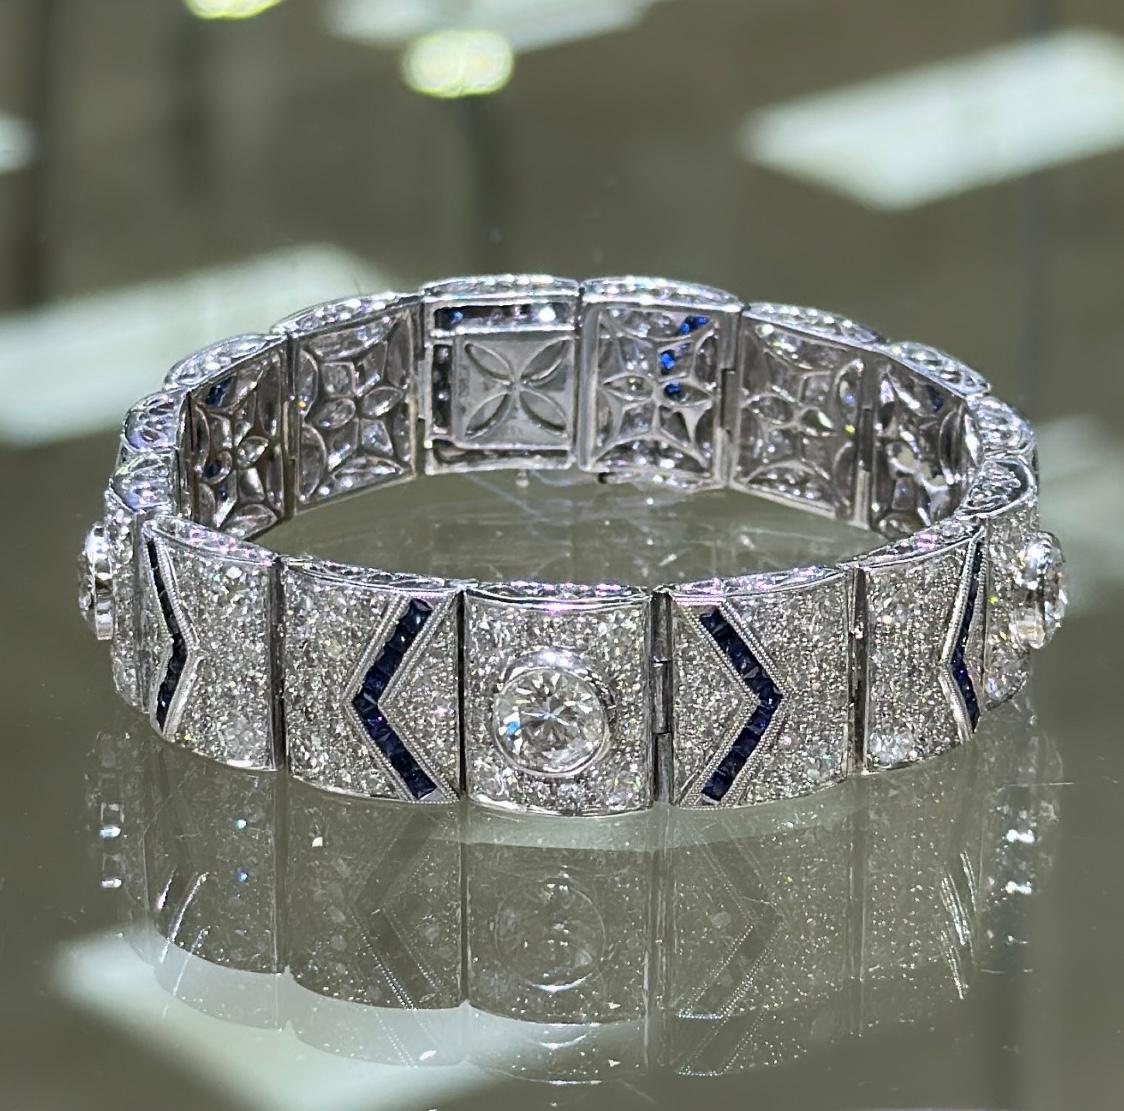 Ce bracelet est digne d'une reine. 
Une conception de bijoux en diamant de saphir blanc et bleu absolument stupéfiante qui brille magnifiquement. Il est composé de platine.
Métal : Platine
Poids du diamant 308 : 12.80ctw
Poids du saphir 90 :